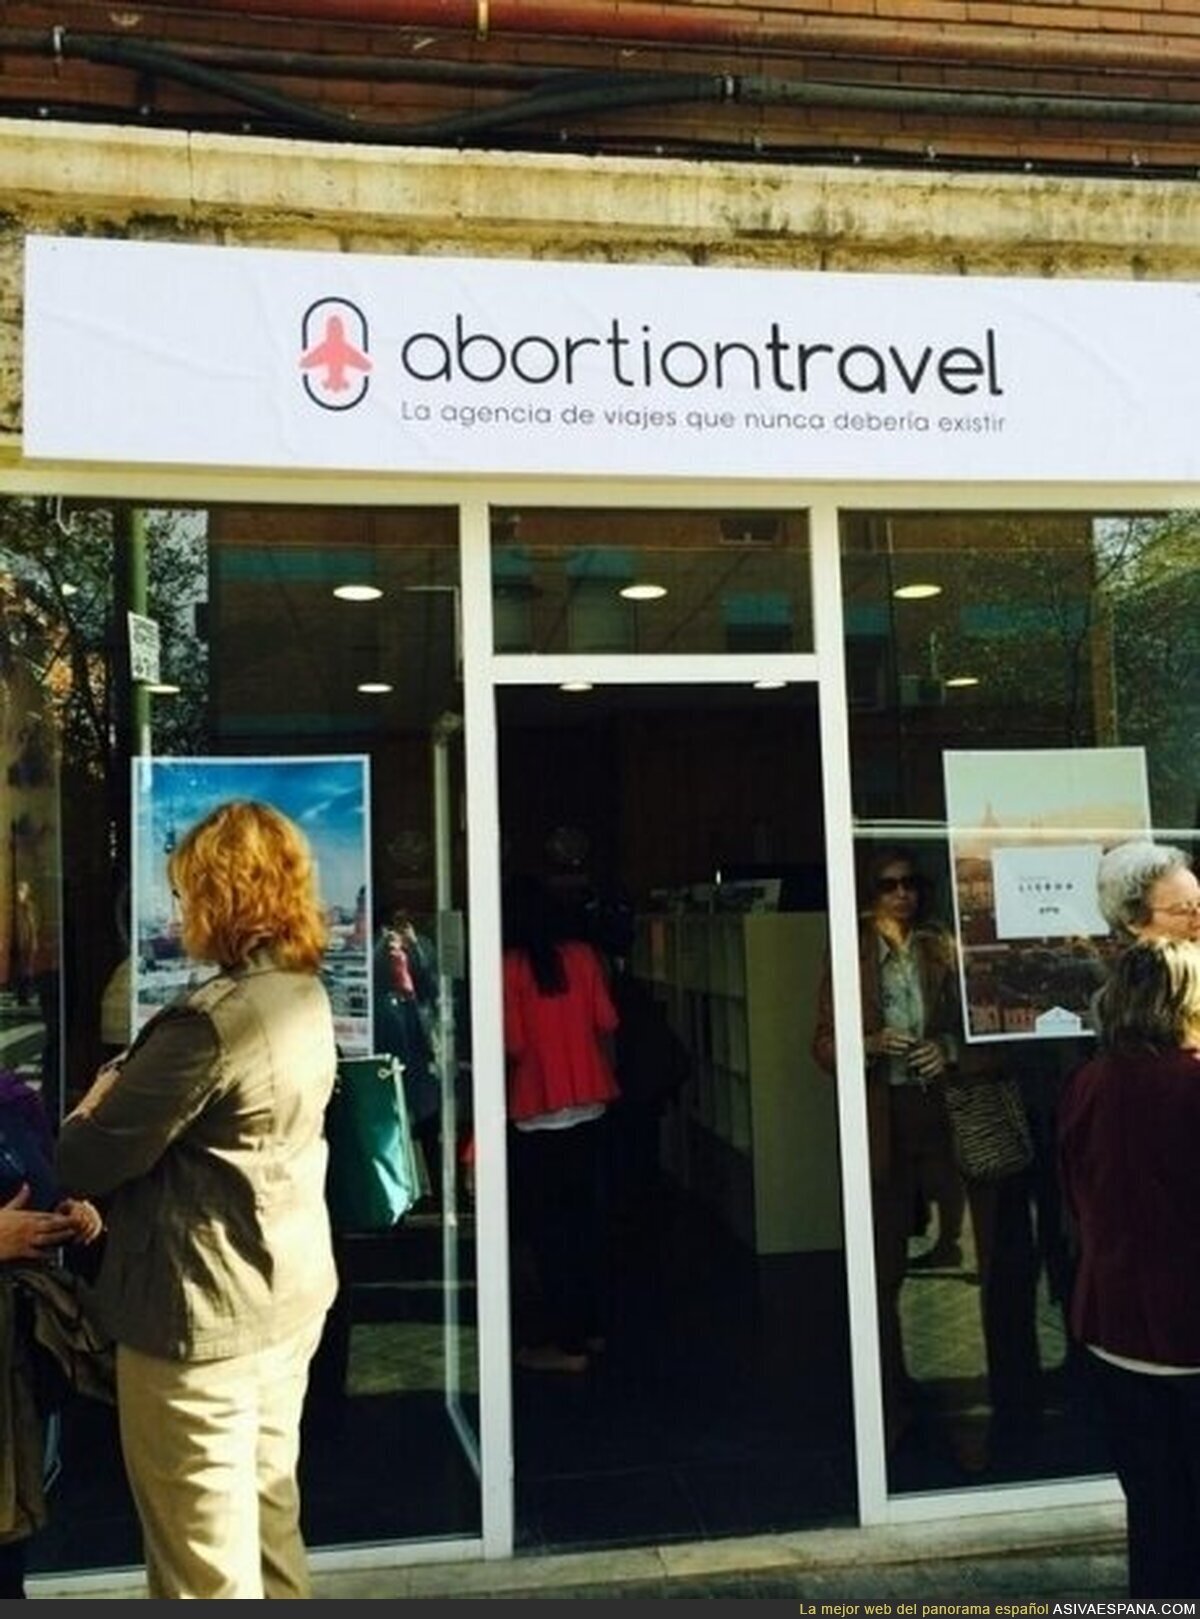 Abortion Travel, para tus compromisos en el extranjero - El eslógan ya lo dice todo